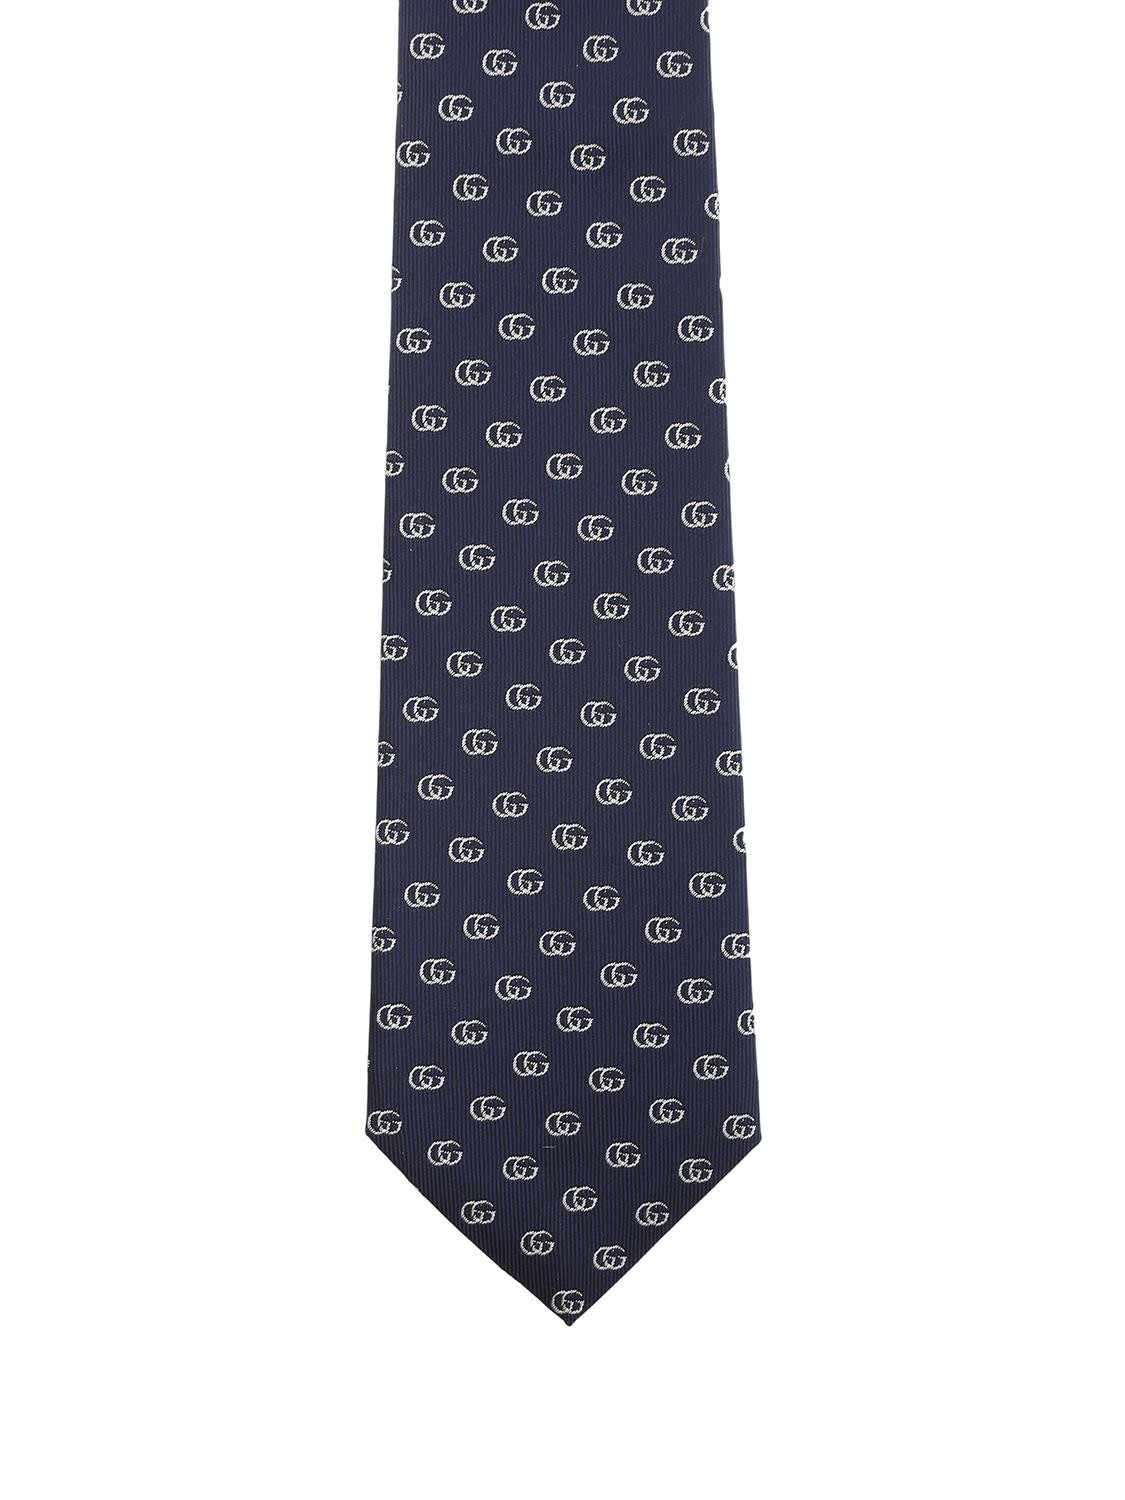 shop GUCCI  Cravatta: Gucci Cravatta in seta blu con motivo Doppia G avorio.
Dimensioni: Larghezza 7 cm lunghezza 146 cm.
Composizione: 100% seta.
Made in Italy.. 444421 4E002-4178BLU/BIANCO number 5378025